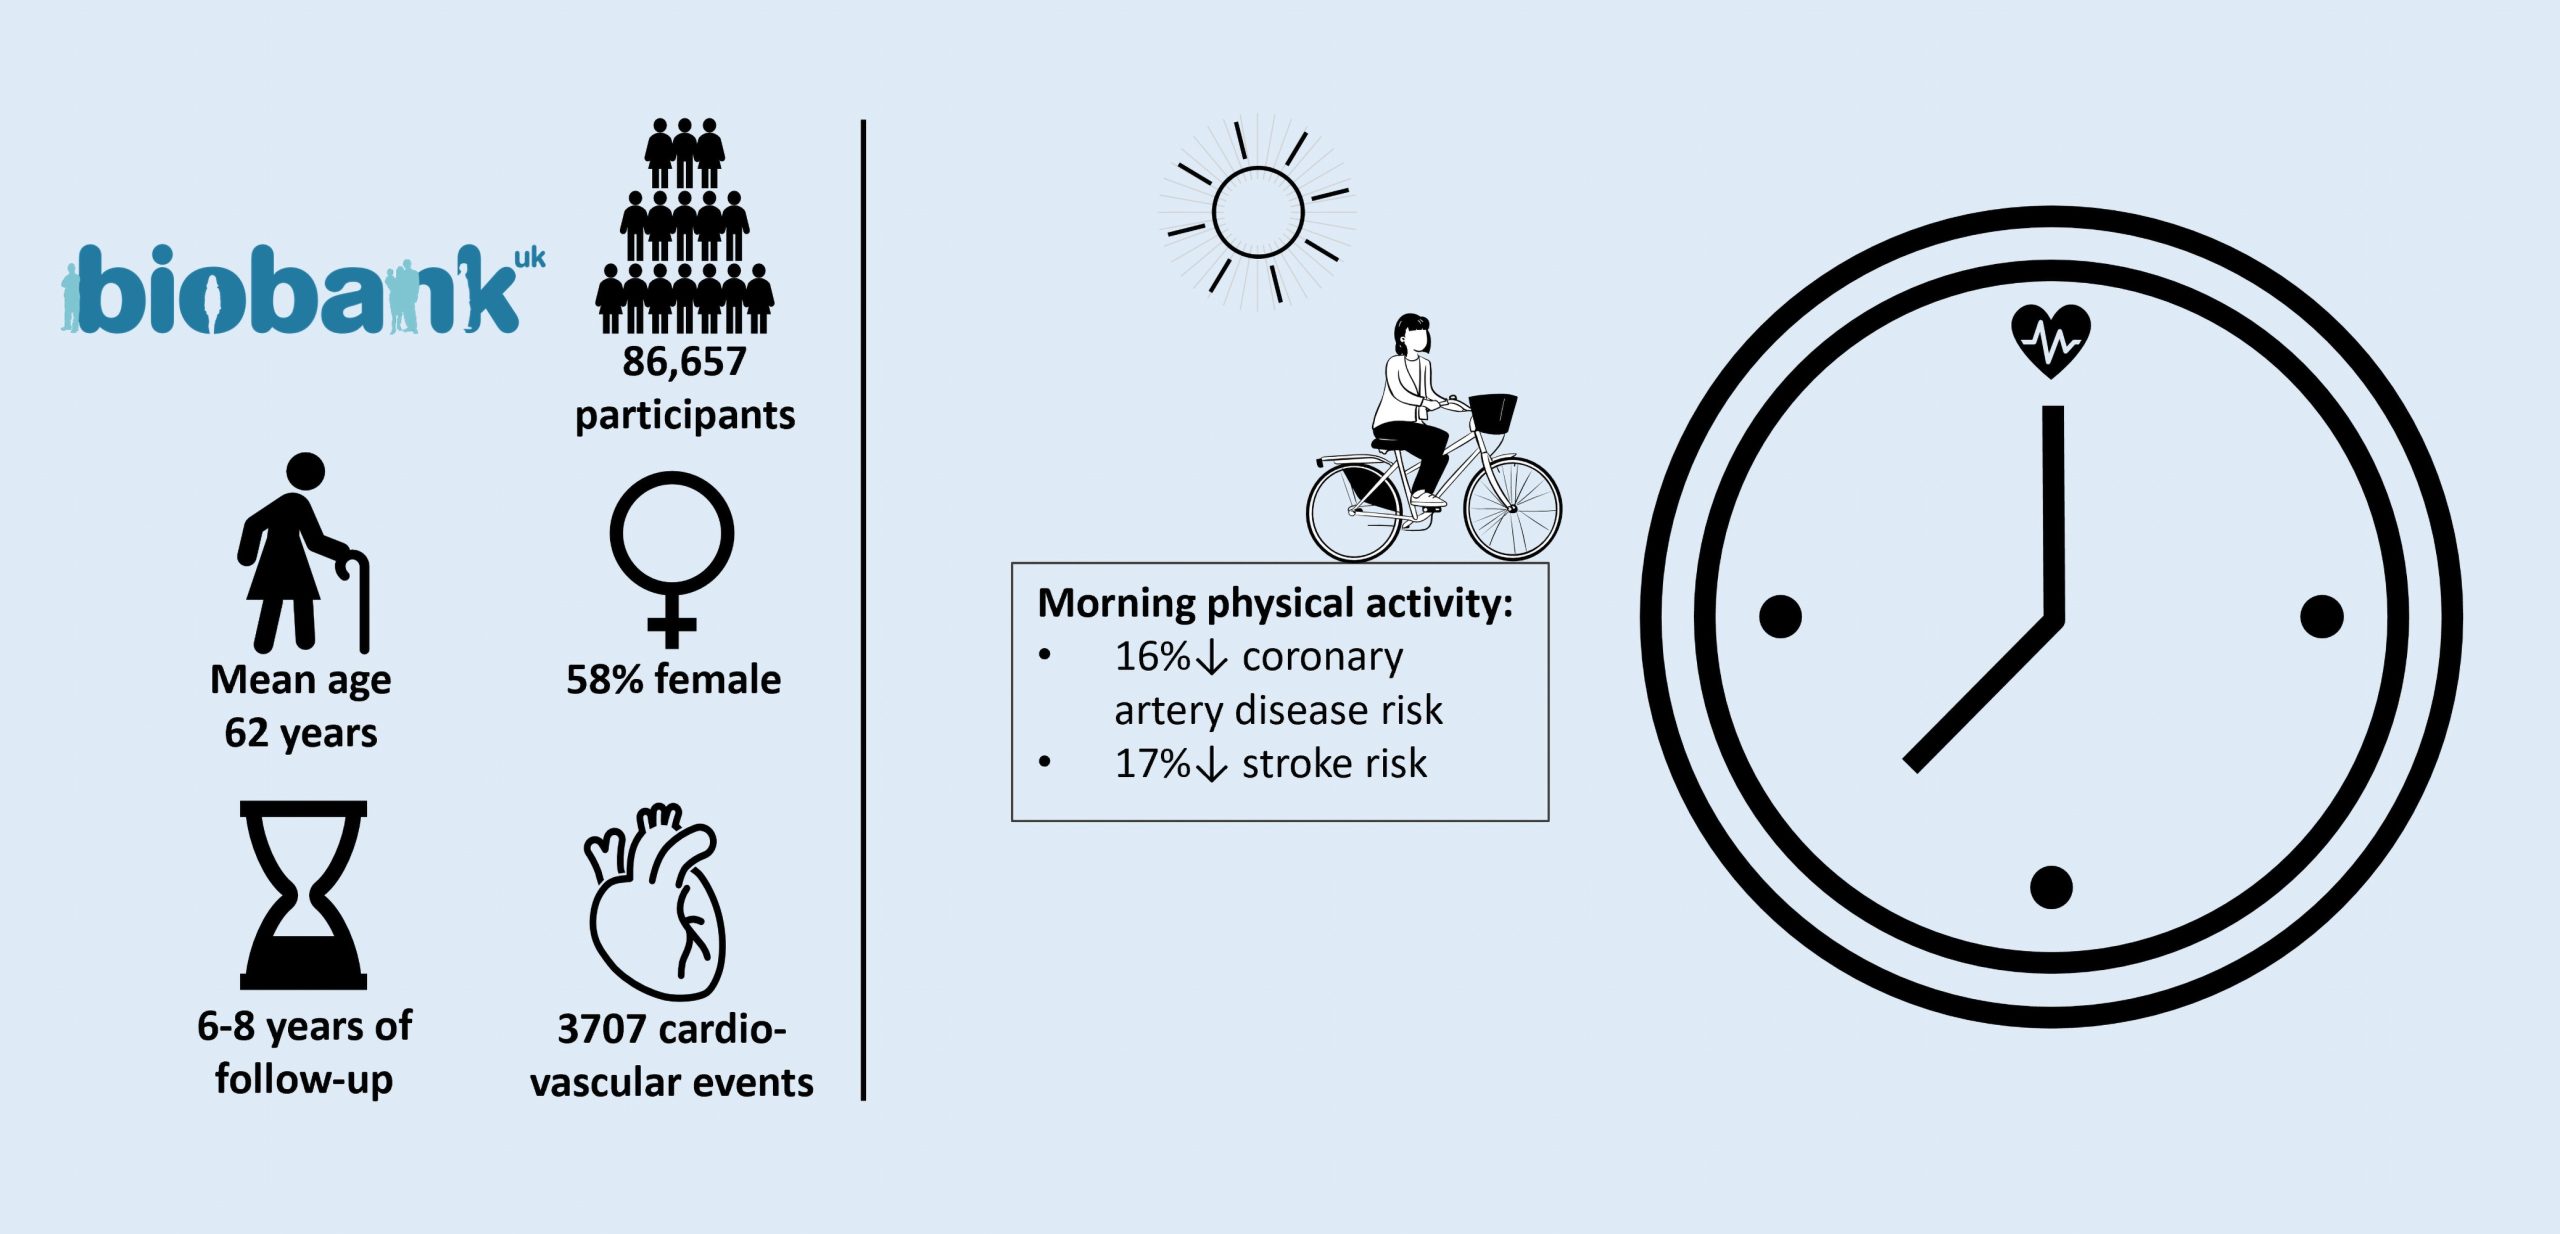 یک مطالعه جدید منتشر شده نشان می دهد ورزش و فعالیت بدنی صبحگاهی با کاهش خطر بیماری قلبی و سکته مرتبط است.